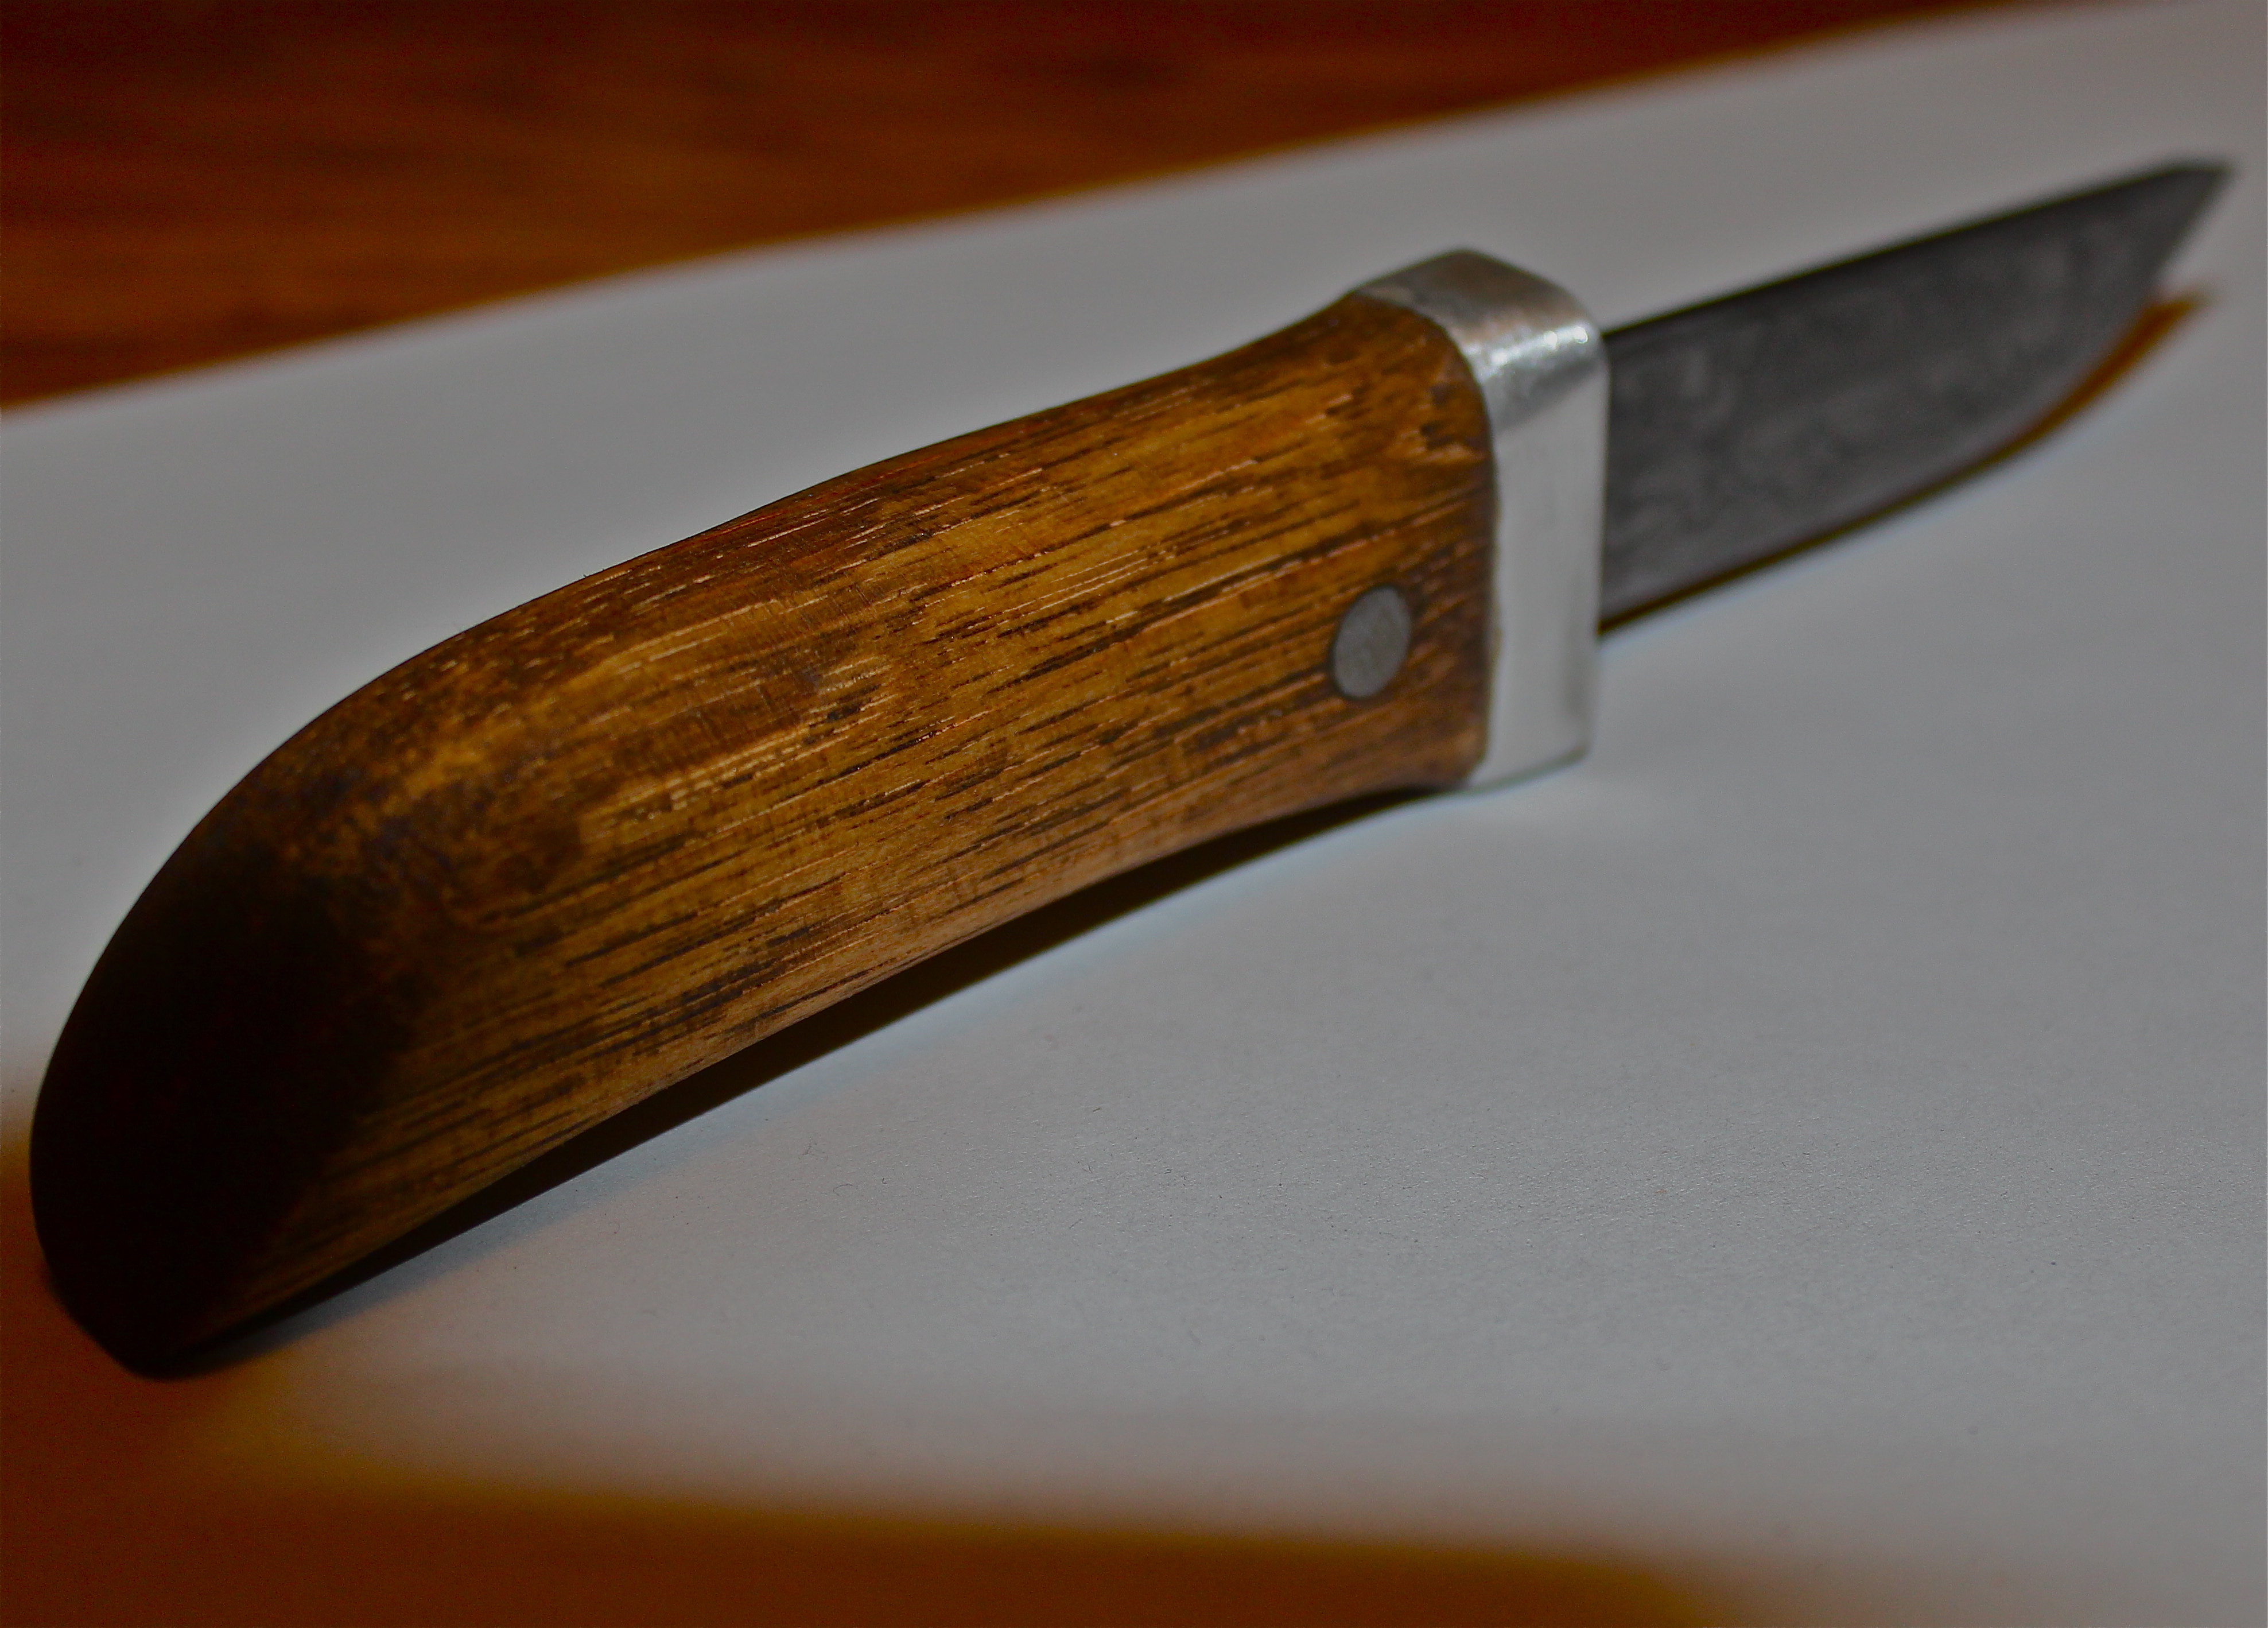 1st Pattern welded knife